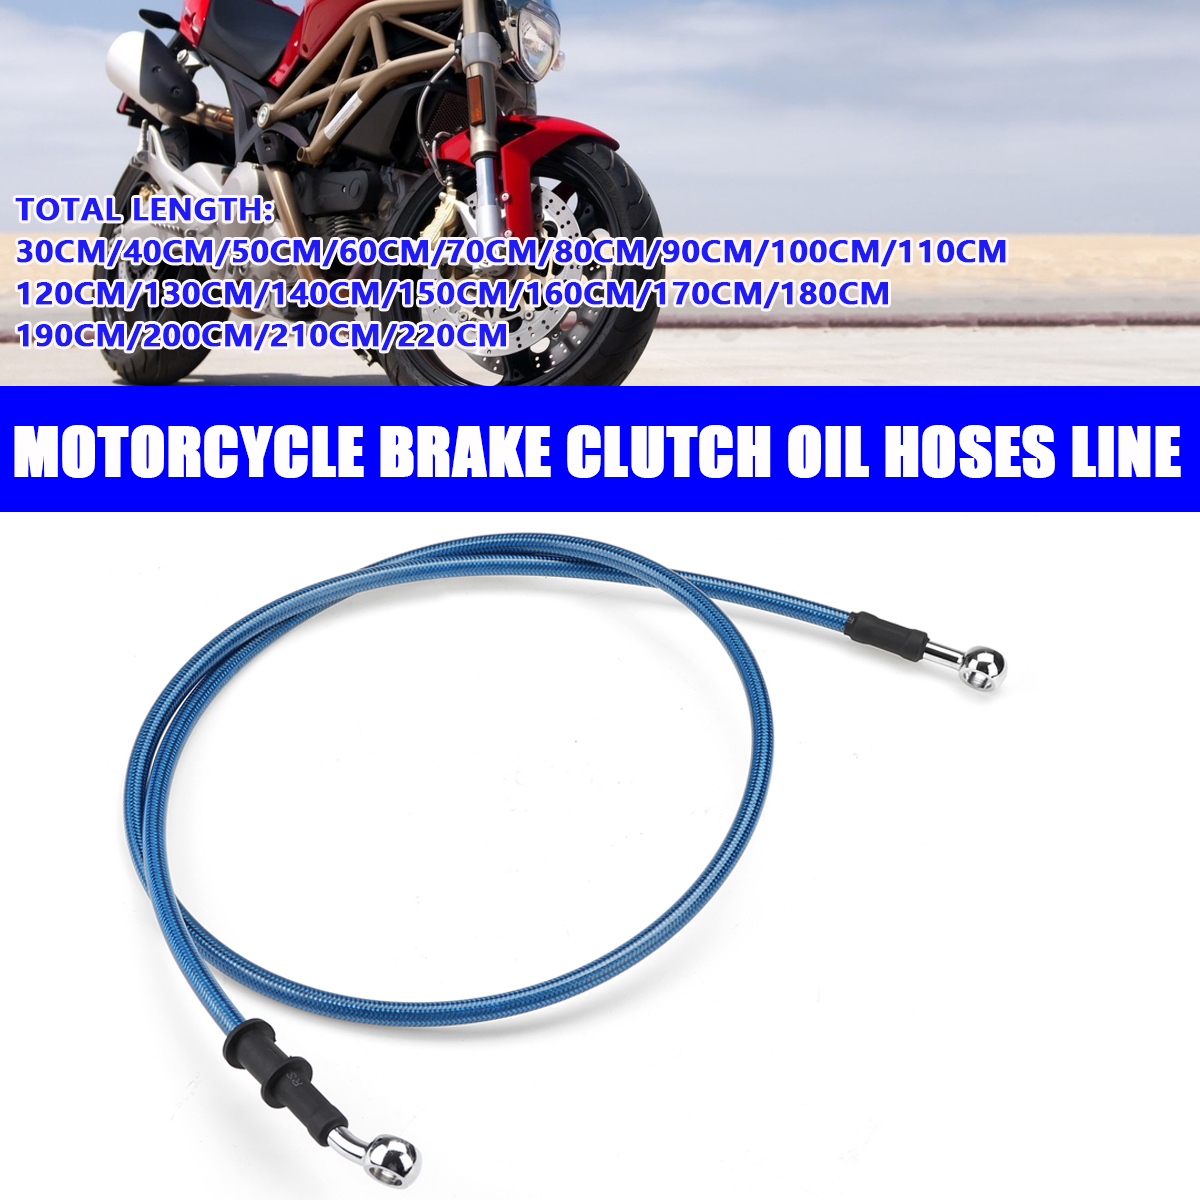 สีน้ำเงิน 40 ซม. รถจักรยานยนต์ คลัตช์เบรกจักรยานแบบถัก น้ำมัน ท่อ สายท่อ สายเบรค Motorcycle Nylon Braided Brake Clutch Oil Hoses Line Pipe Cable